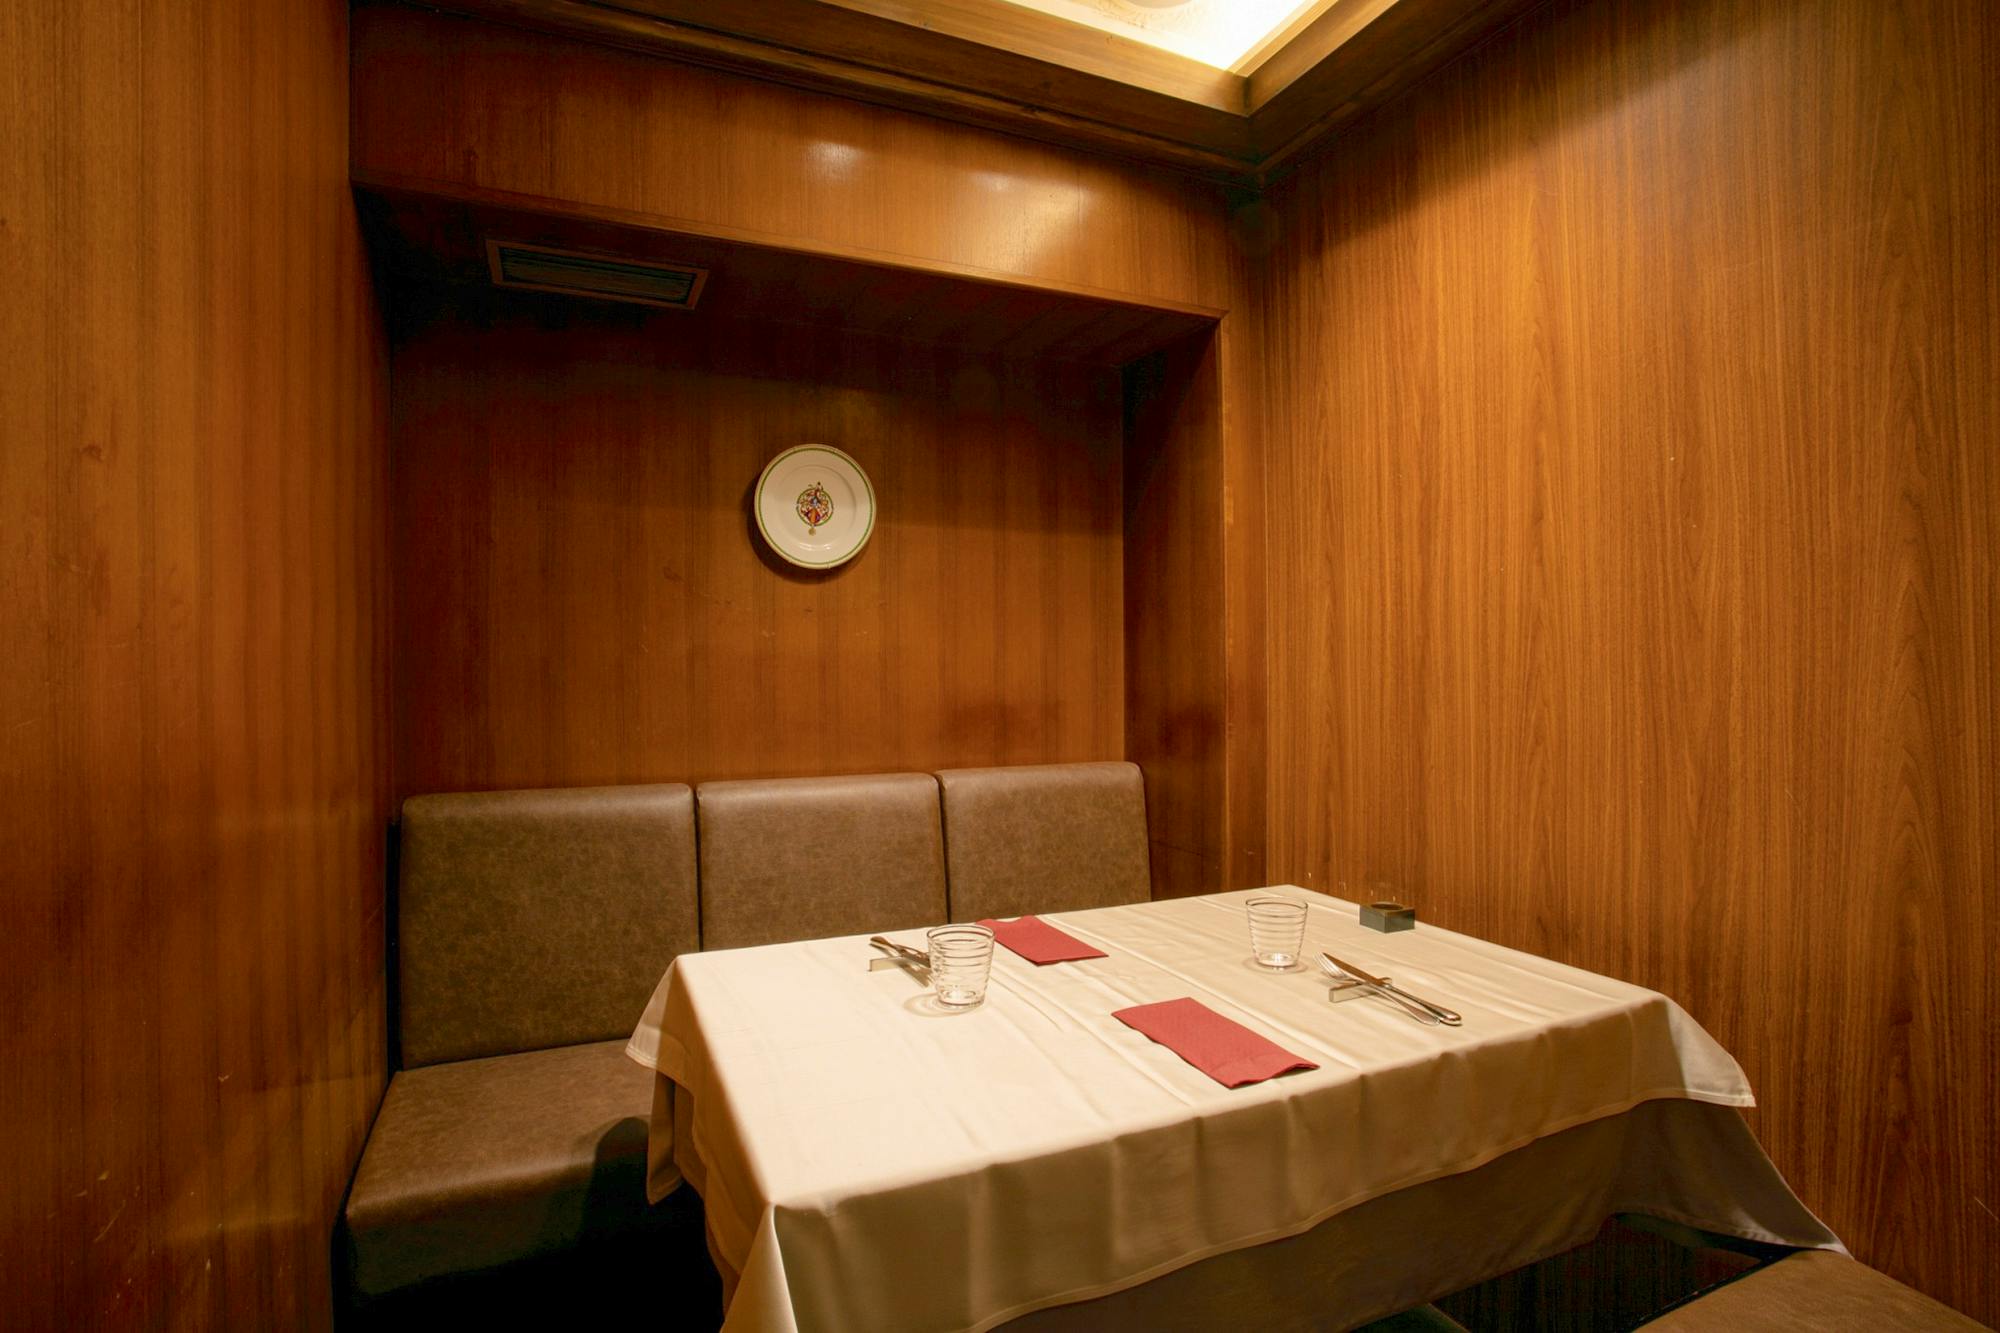 淀屋橋 本町 北浜 天満橋ディナー イタリアンを楽しめるおしゃれなレストラン45選 Okaimonoモール レストラン